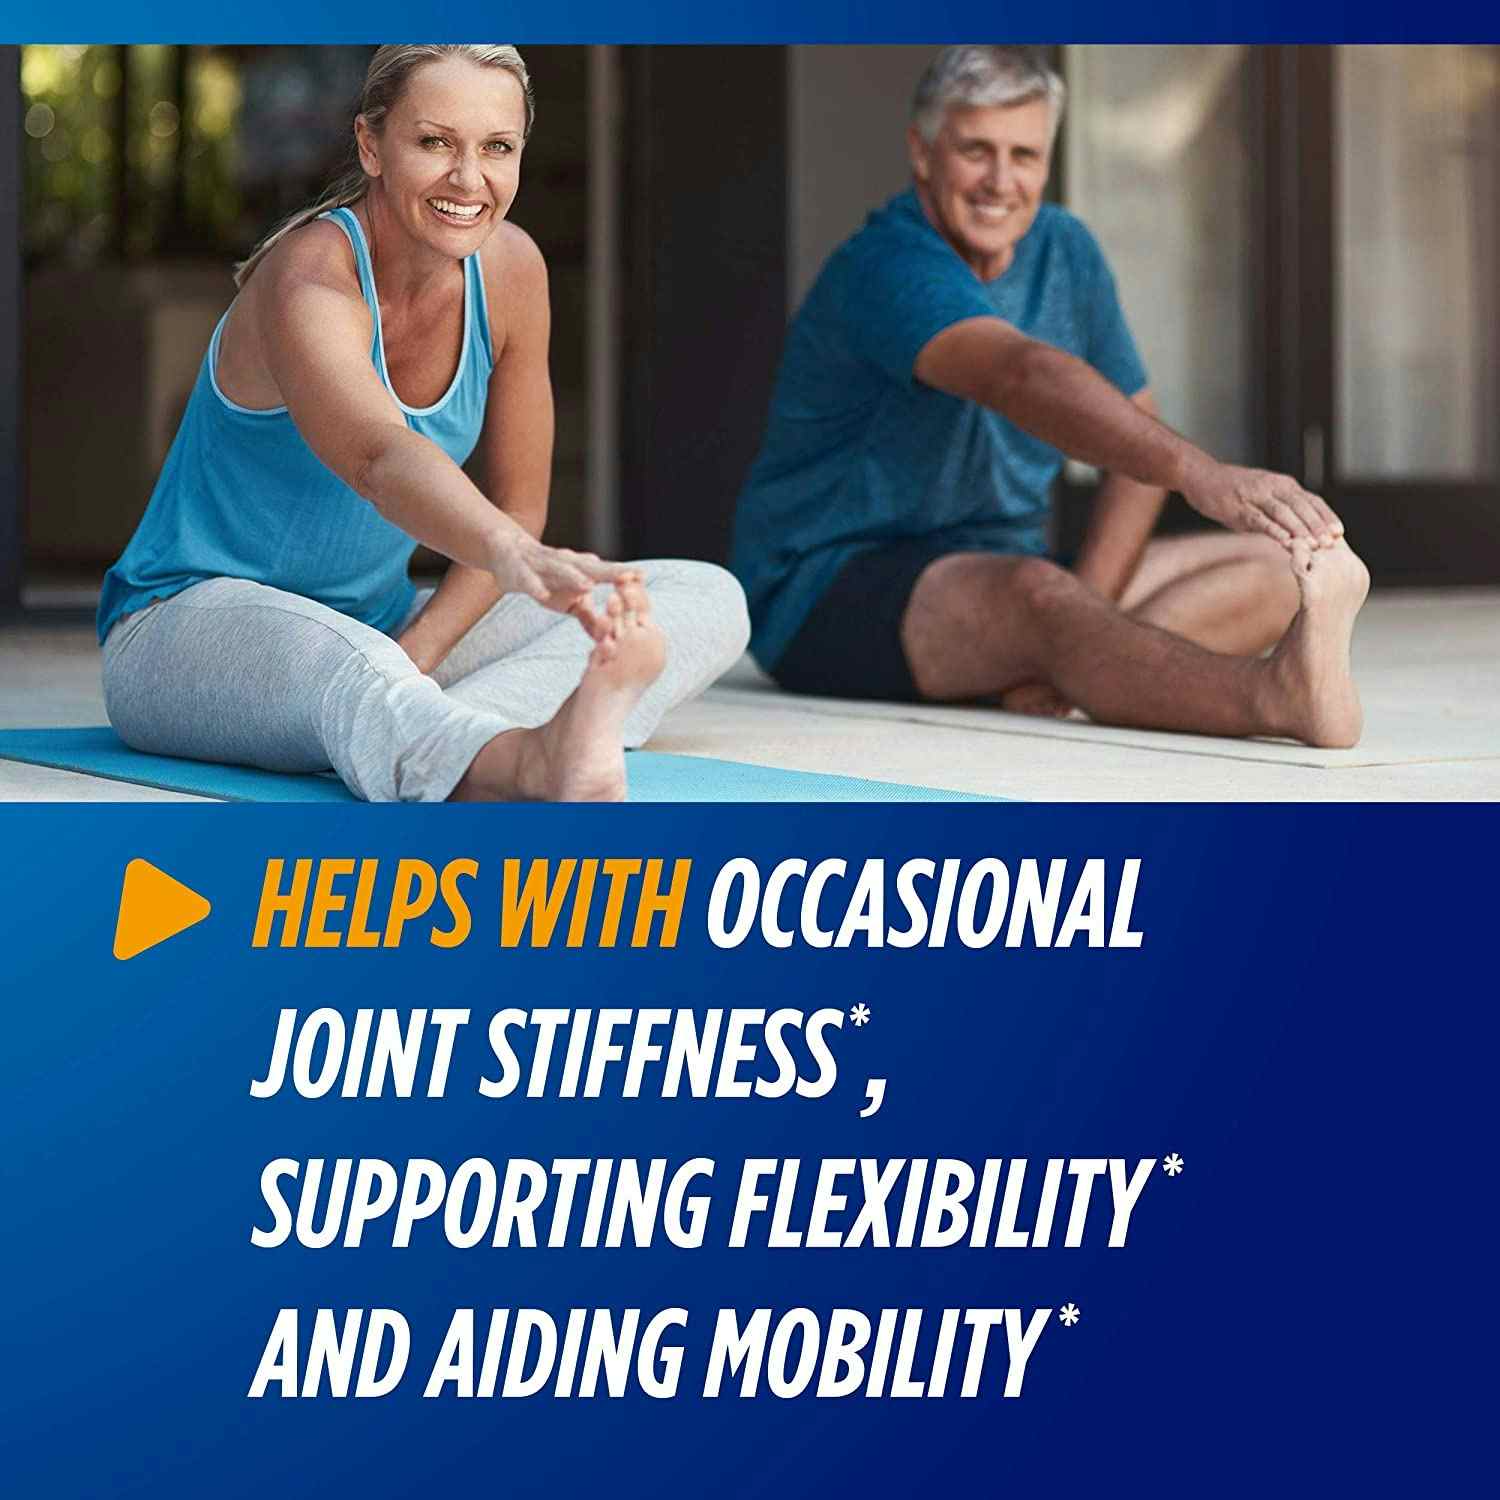 Osteo Bi-Flex Joint Health Triple Strength Supplement